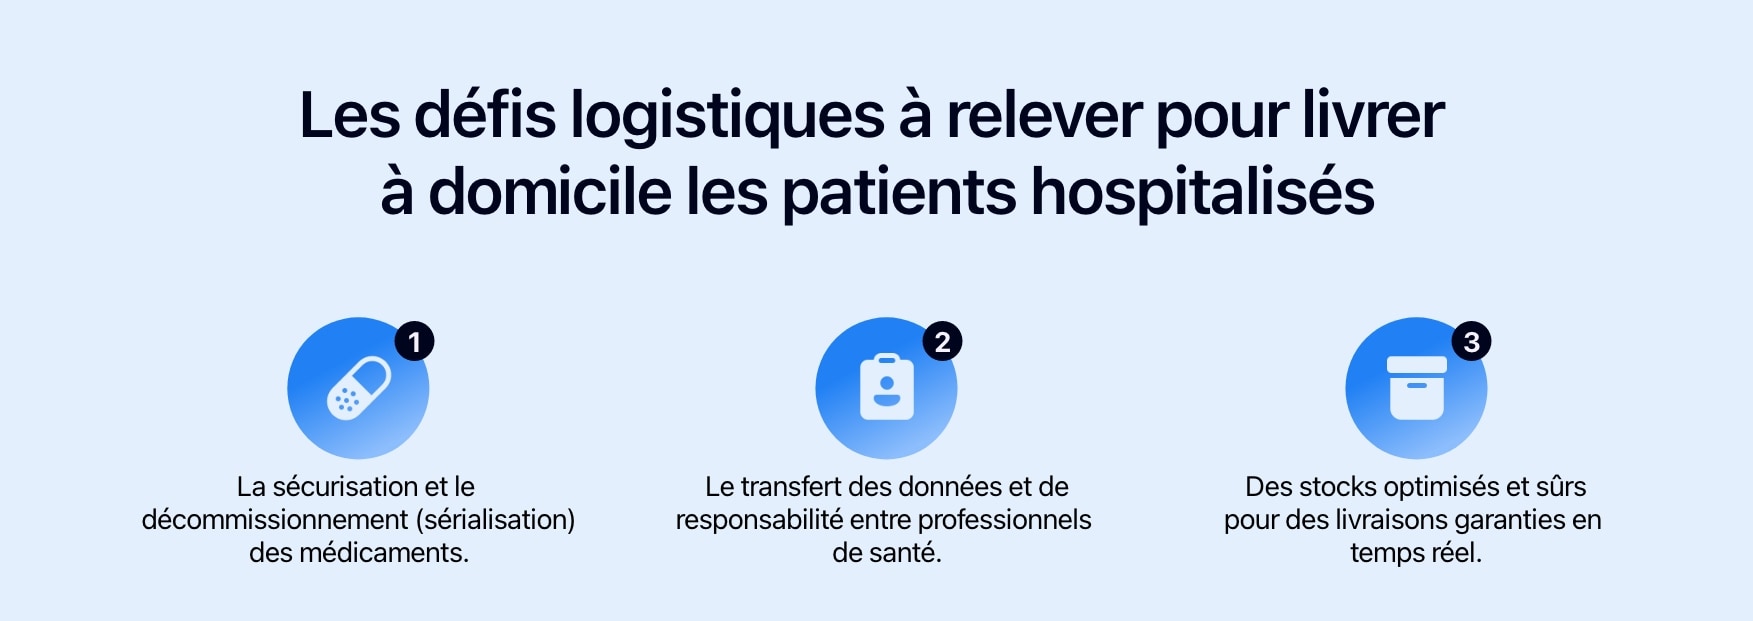 Schéma présentant les trois défis logistiques pour livrer à domicile les patients hospitalisés.